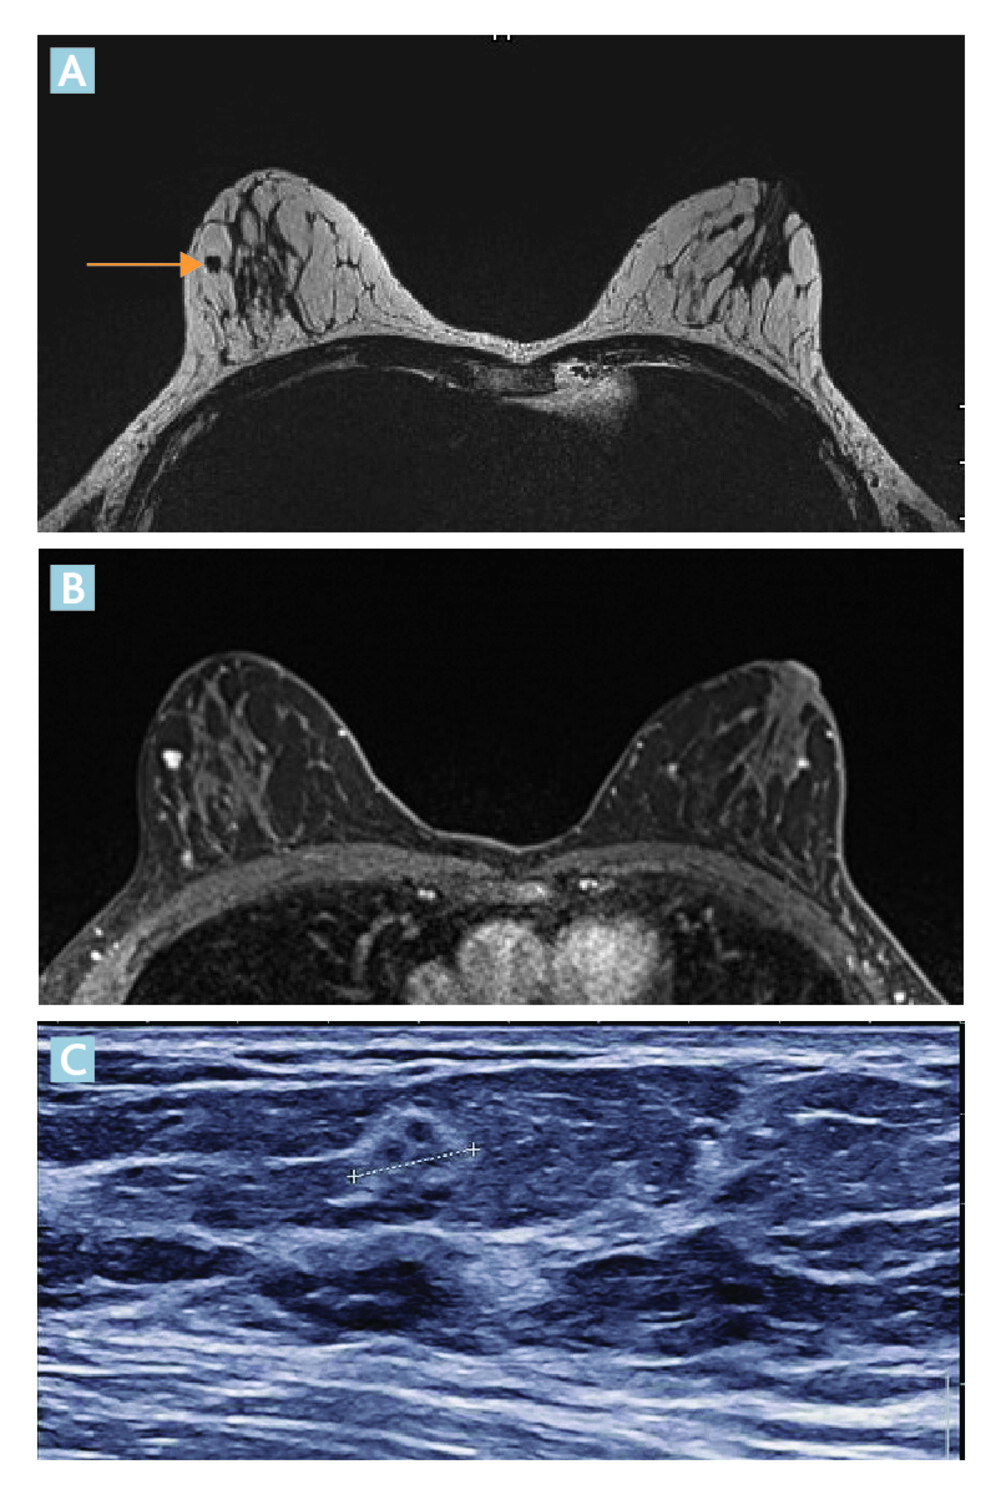 L’IRM mammaire chez les femmes présentant un variant BRCA pathogène de prédisposition au cancer du sein  - Figure 5